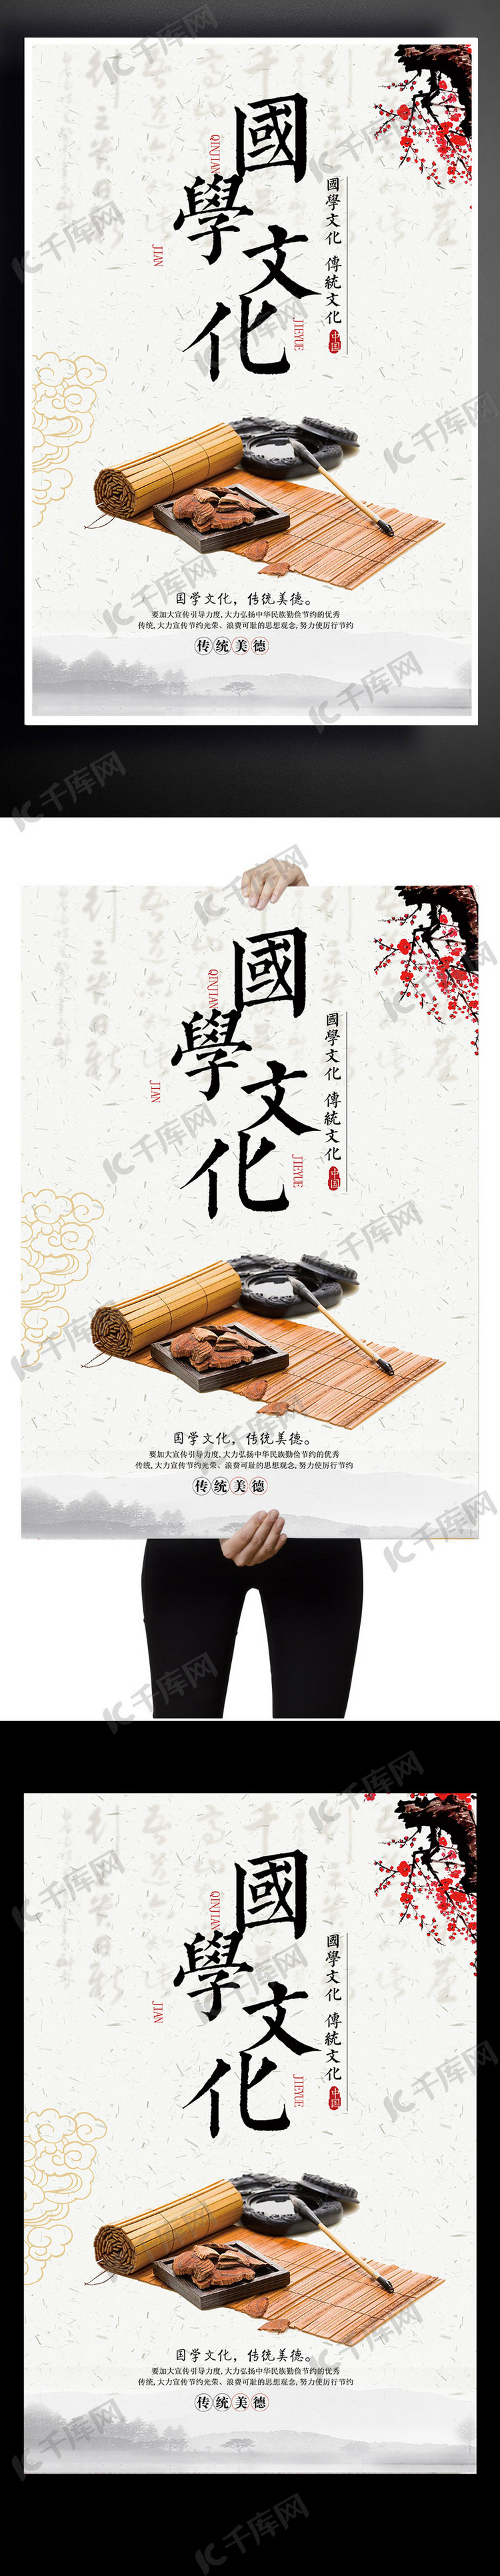 国学文化中国风海报下载